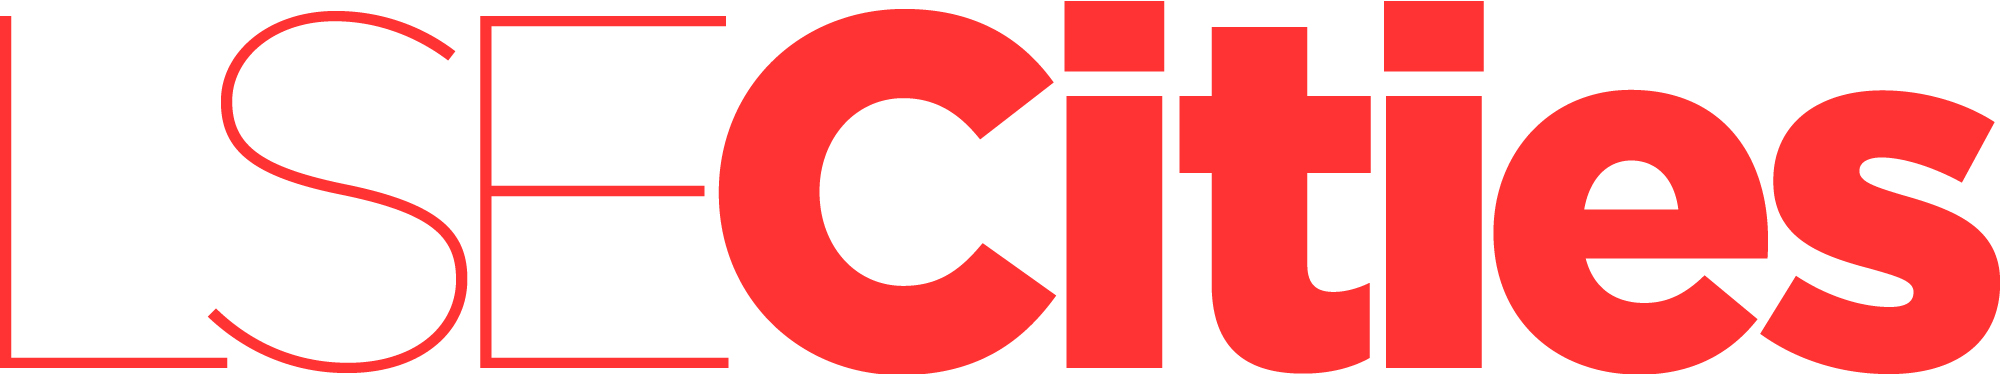 LSE Cities logo